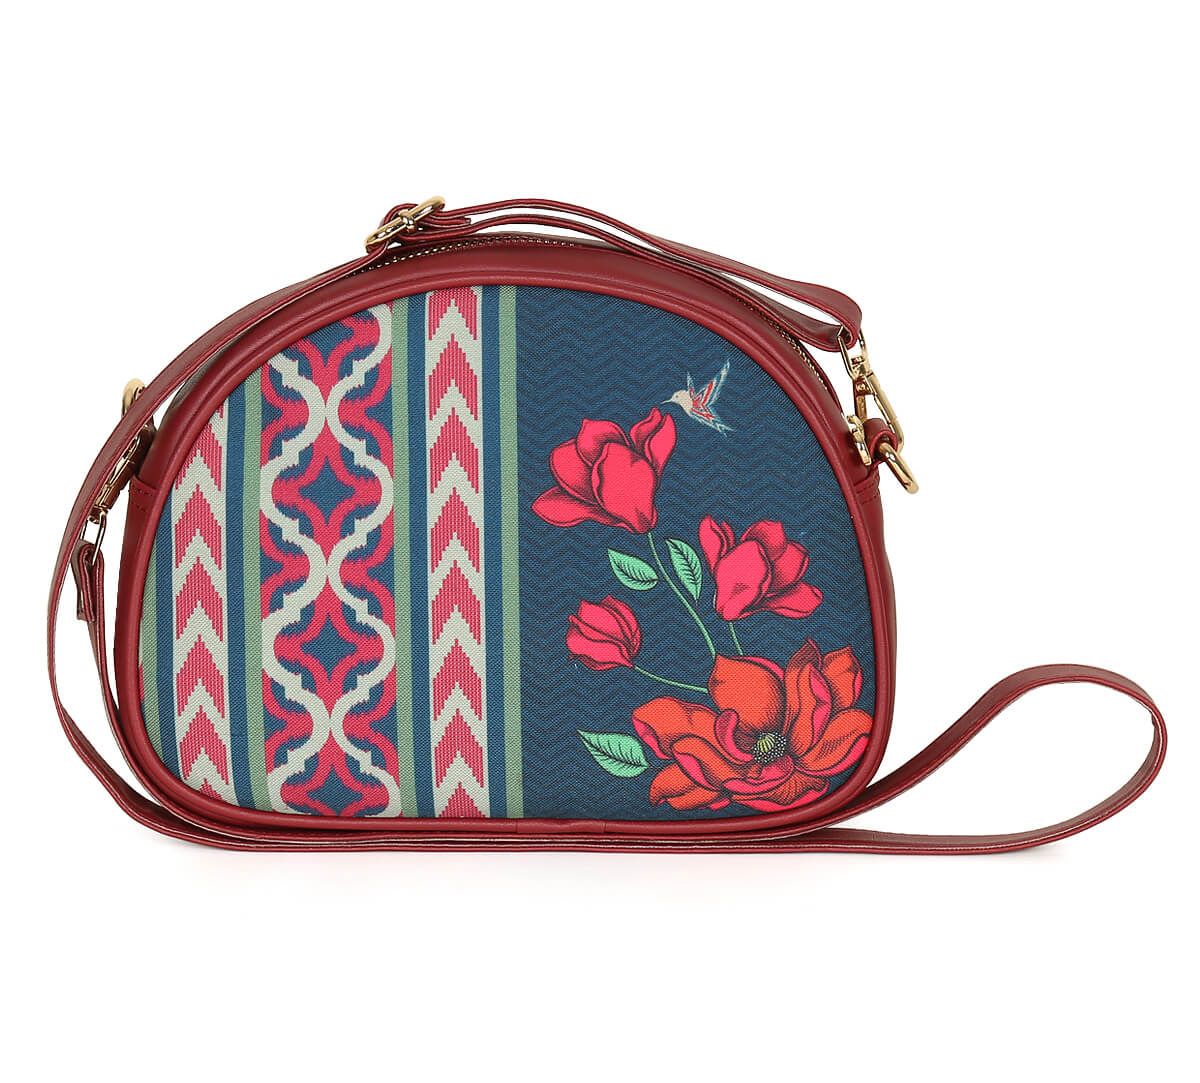 Indian Handmade Patchwork Bag Afghani Bag Woman Handbag - Etsy | Patchwork  bags, Bags, Cotton shoulder bag